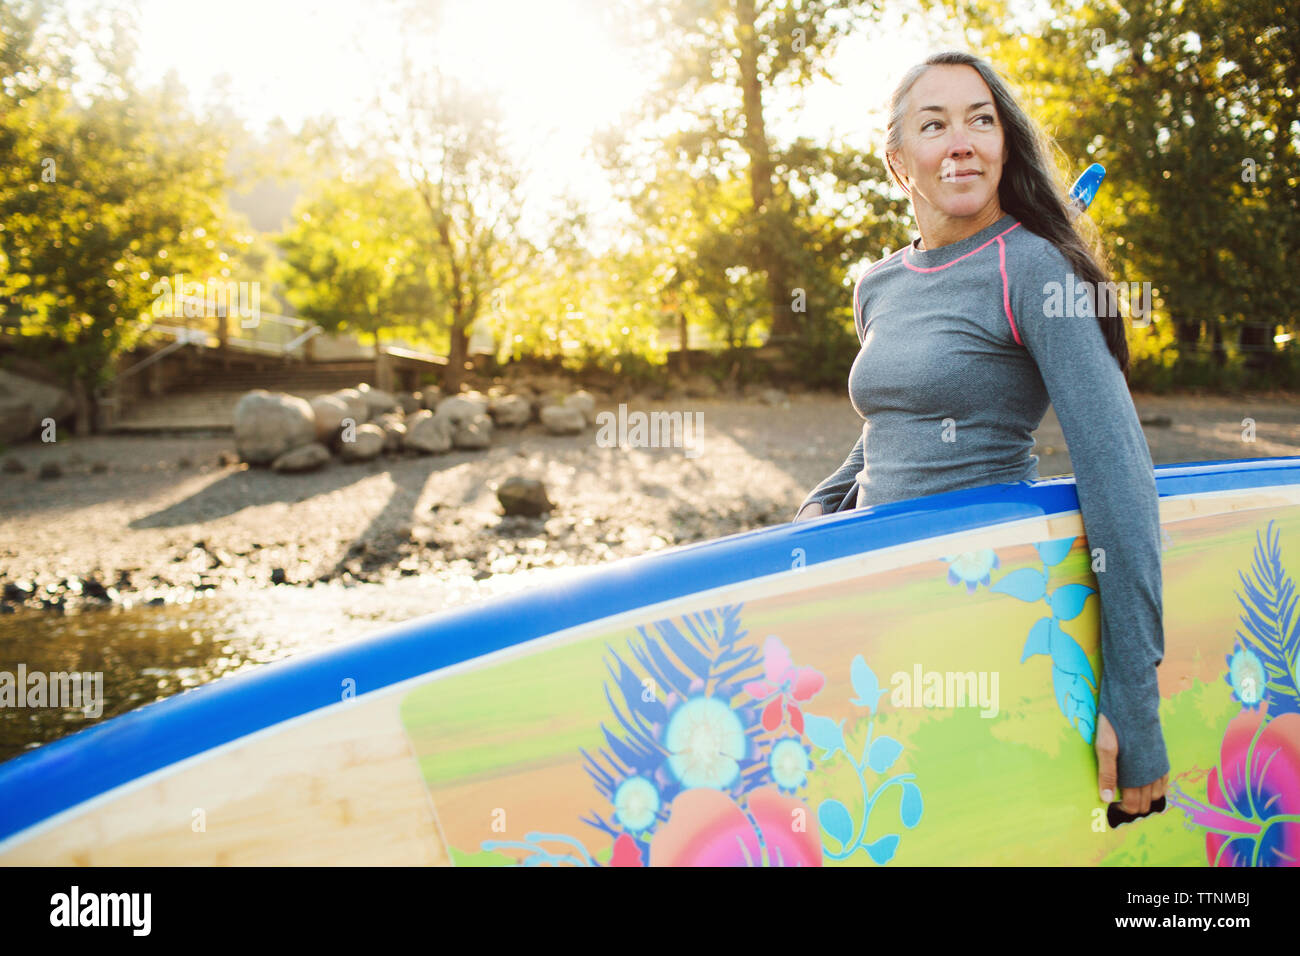 Frau weg suchen, beim Tragen paddleboard am Flussufer Stockfoto